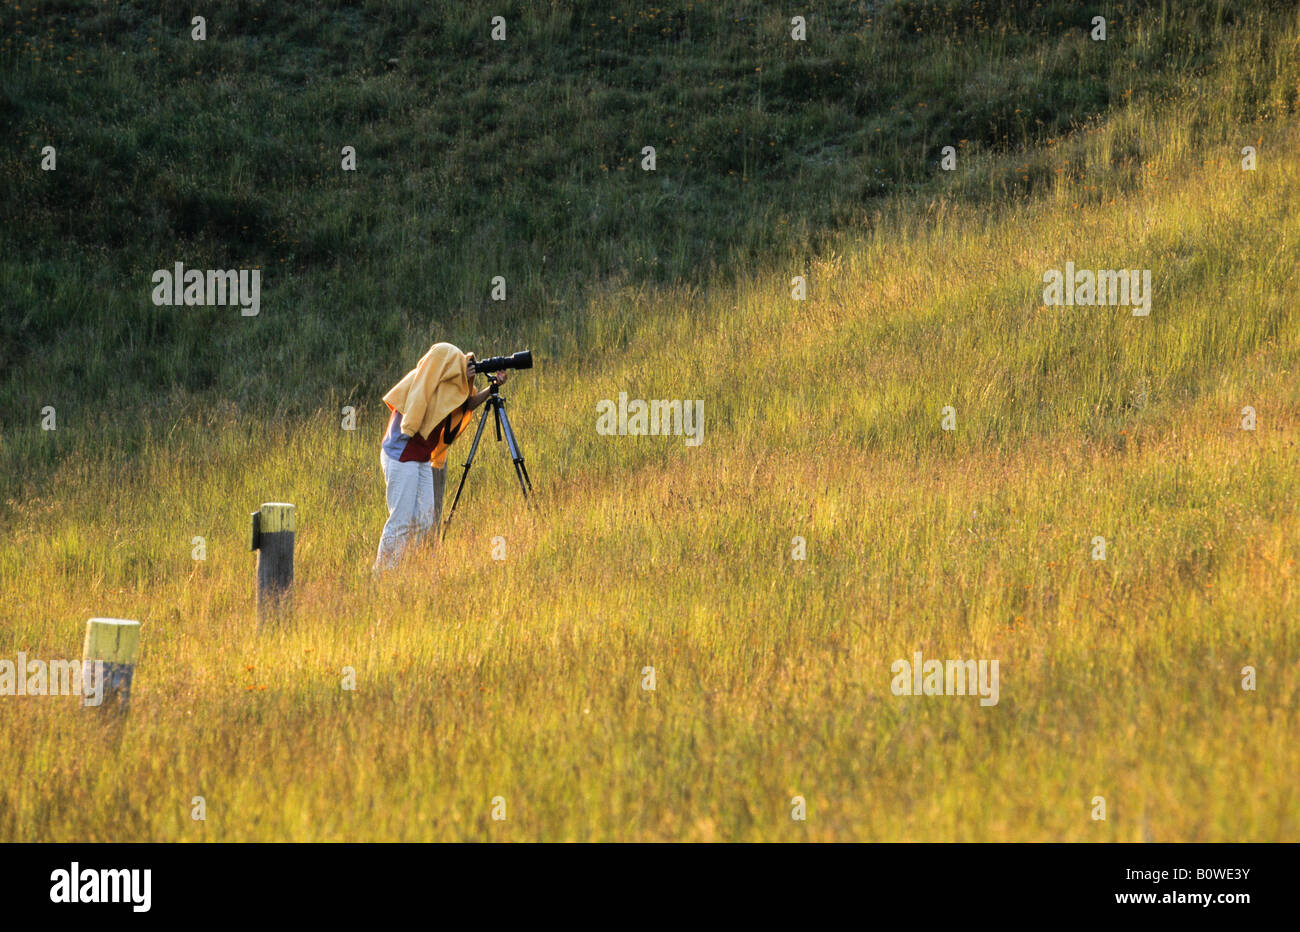 Fotograf mit Stativ, mit dem Ziel, Teleobjektiv, Kopf und Kamera abgedeckt, um Licht zu blockieren Stockfoto